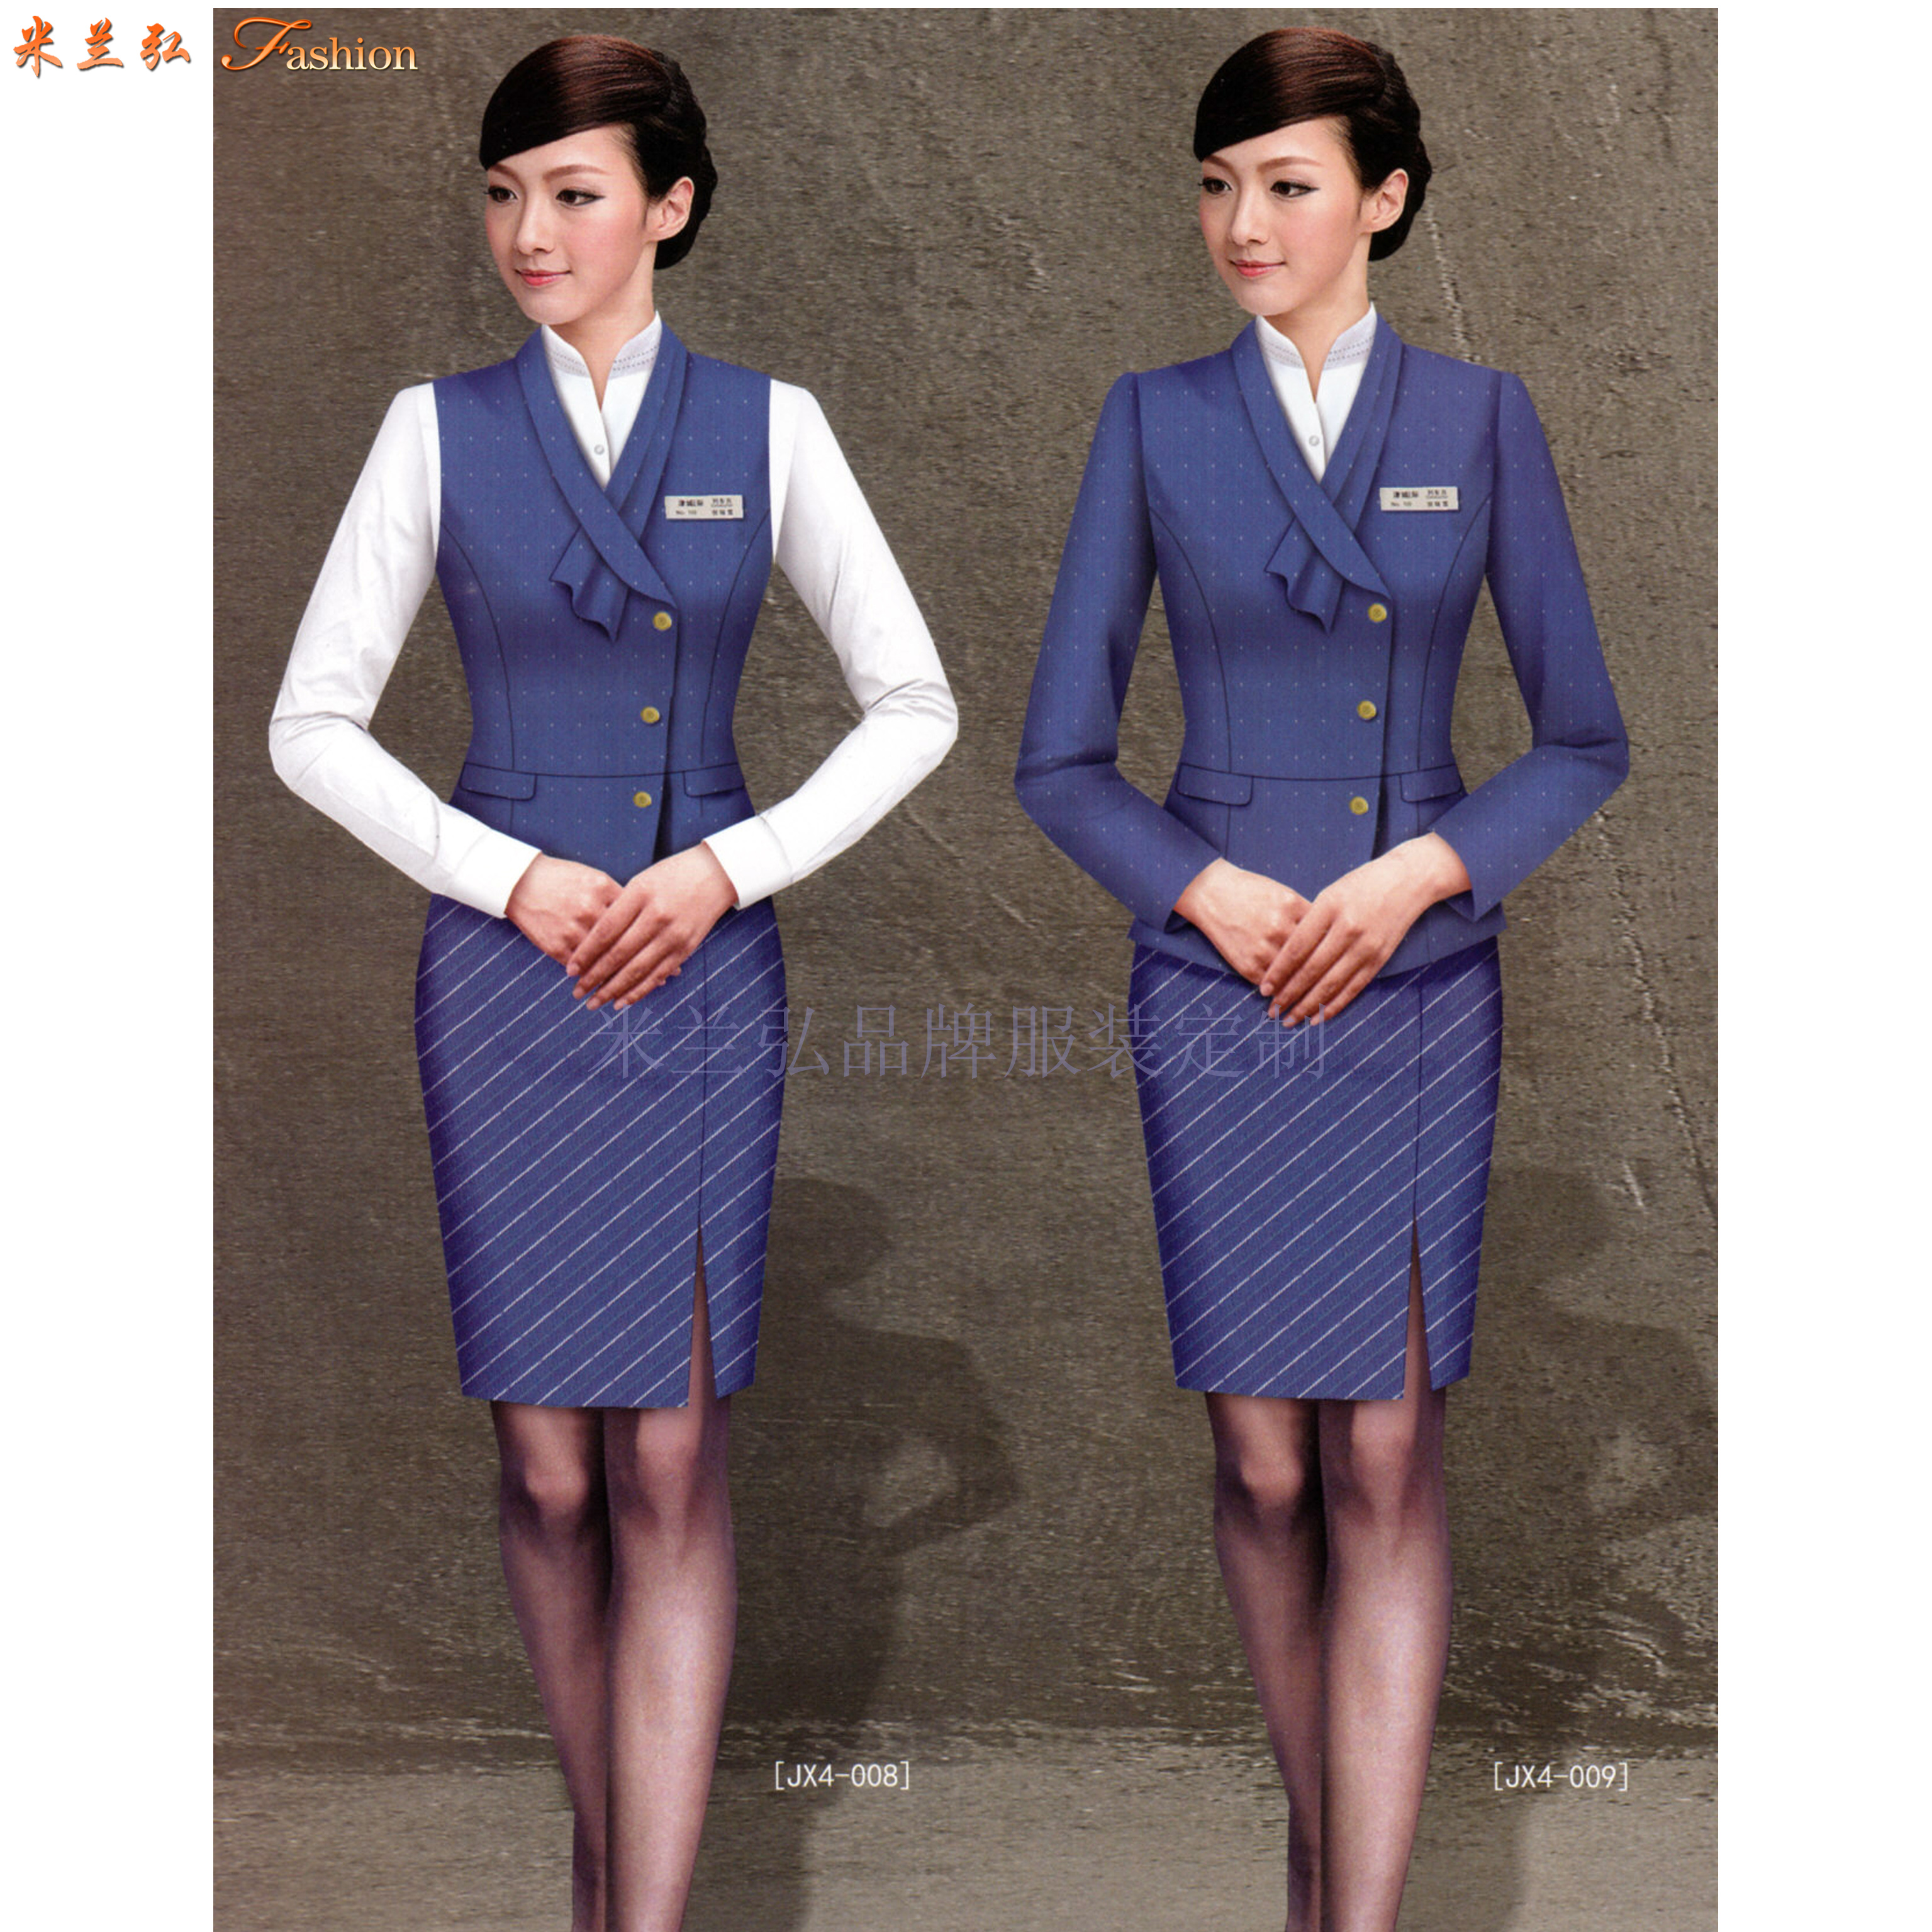 機場工作服-北京大興國際機場地勤VIP、客服職業裝量身定做-1